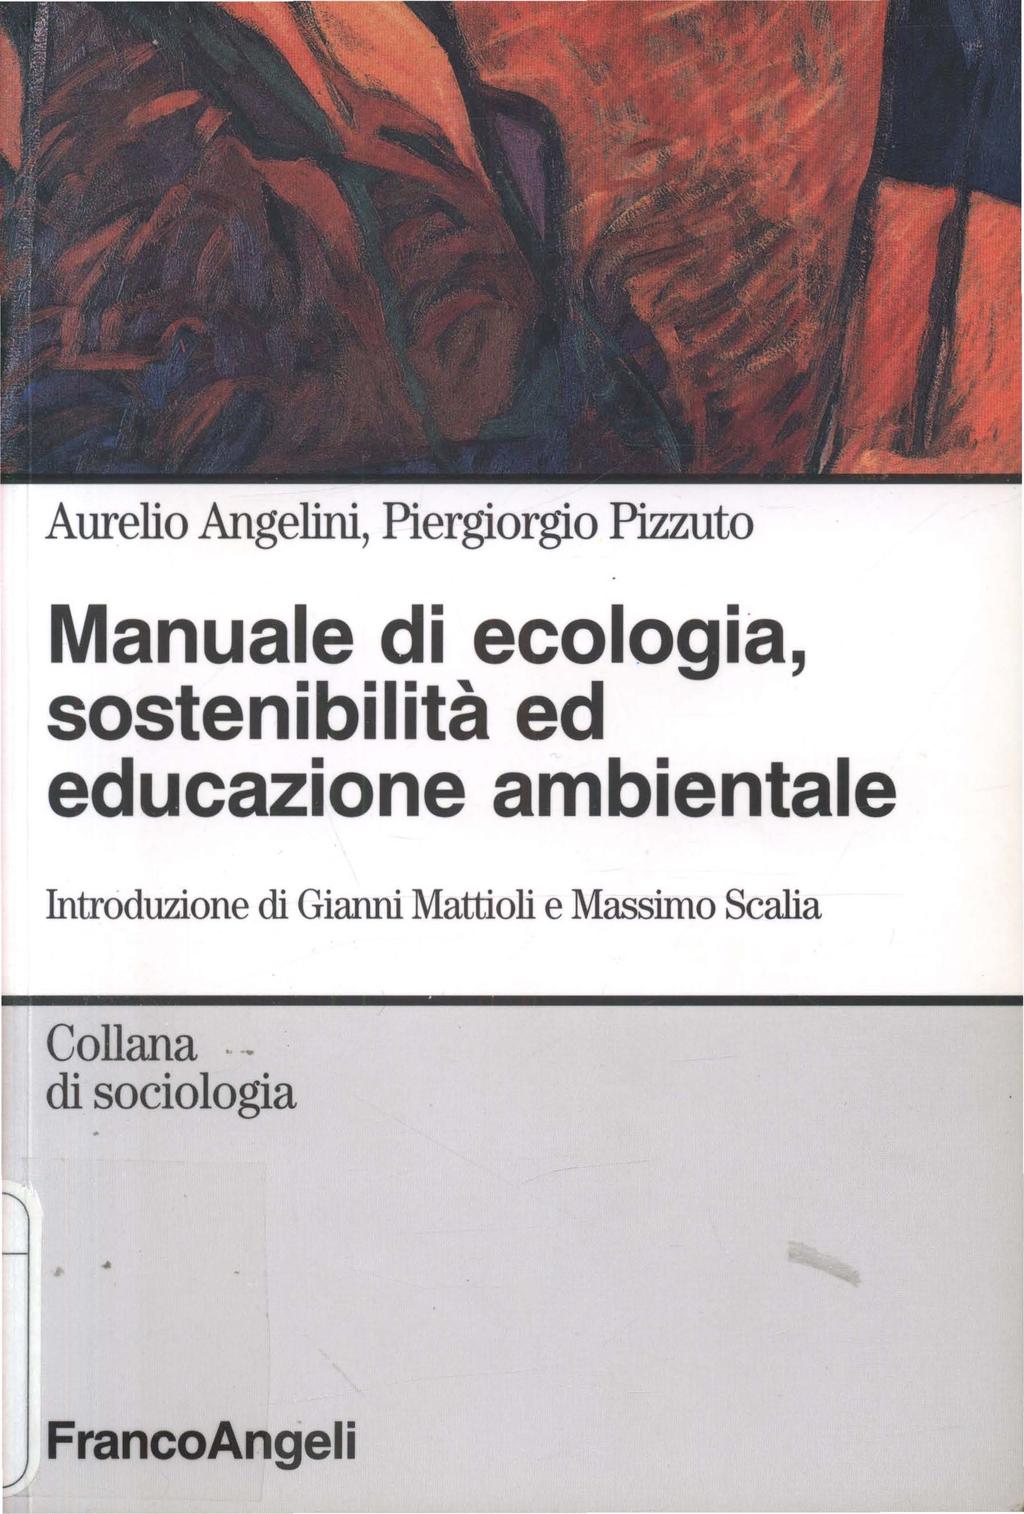 Aurelio Angelini, Piergiorgio Pizzuto Manuale di ecologia, sostenibilità ed educazione